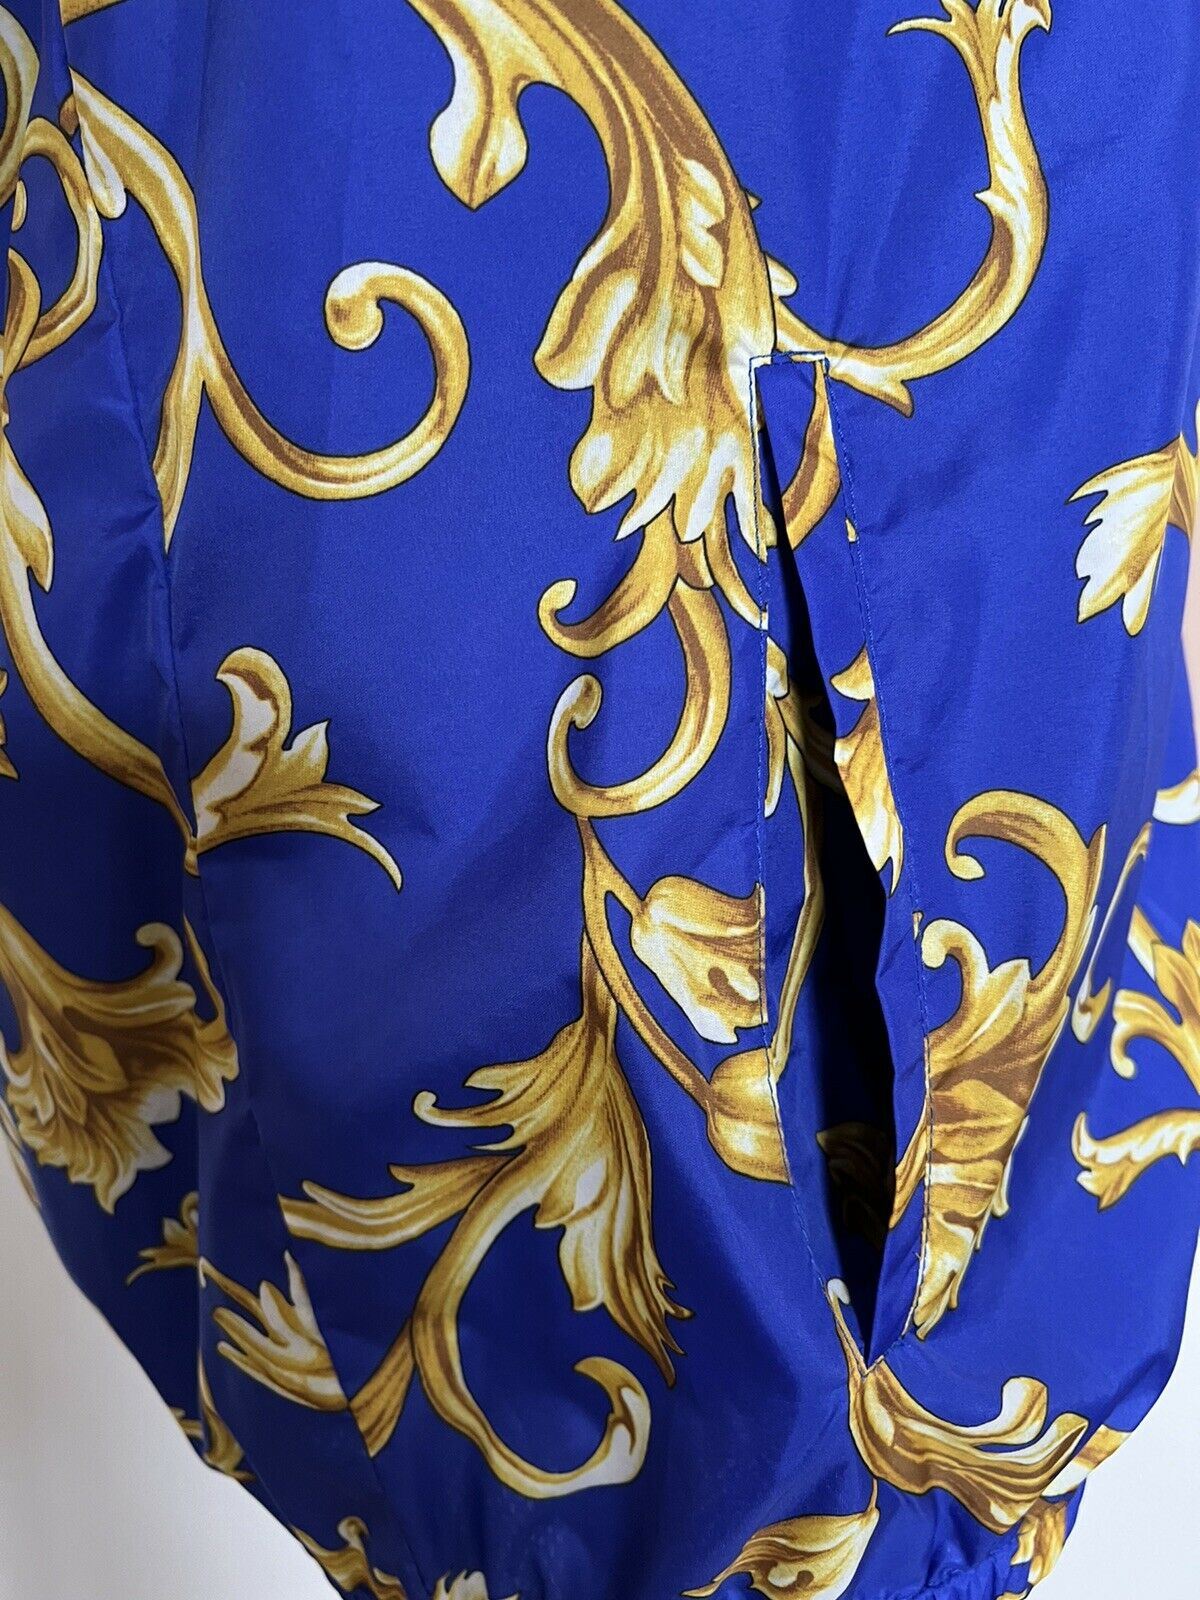 СЗТ $1100 Versace Мужская куртка с капюшоном Barocco Intante Ветровка Синяя 54 США 